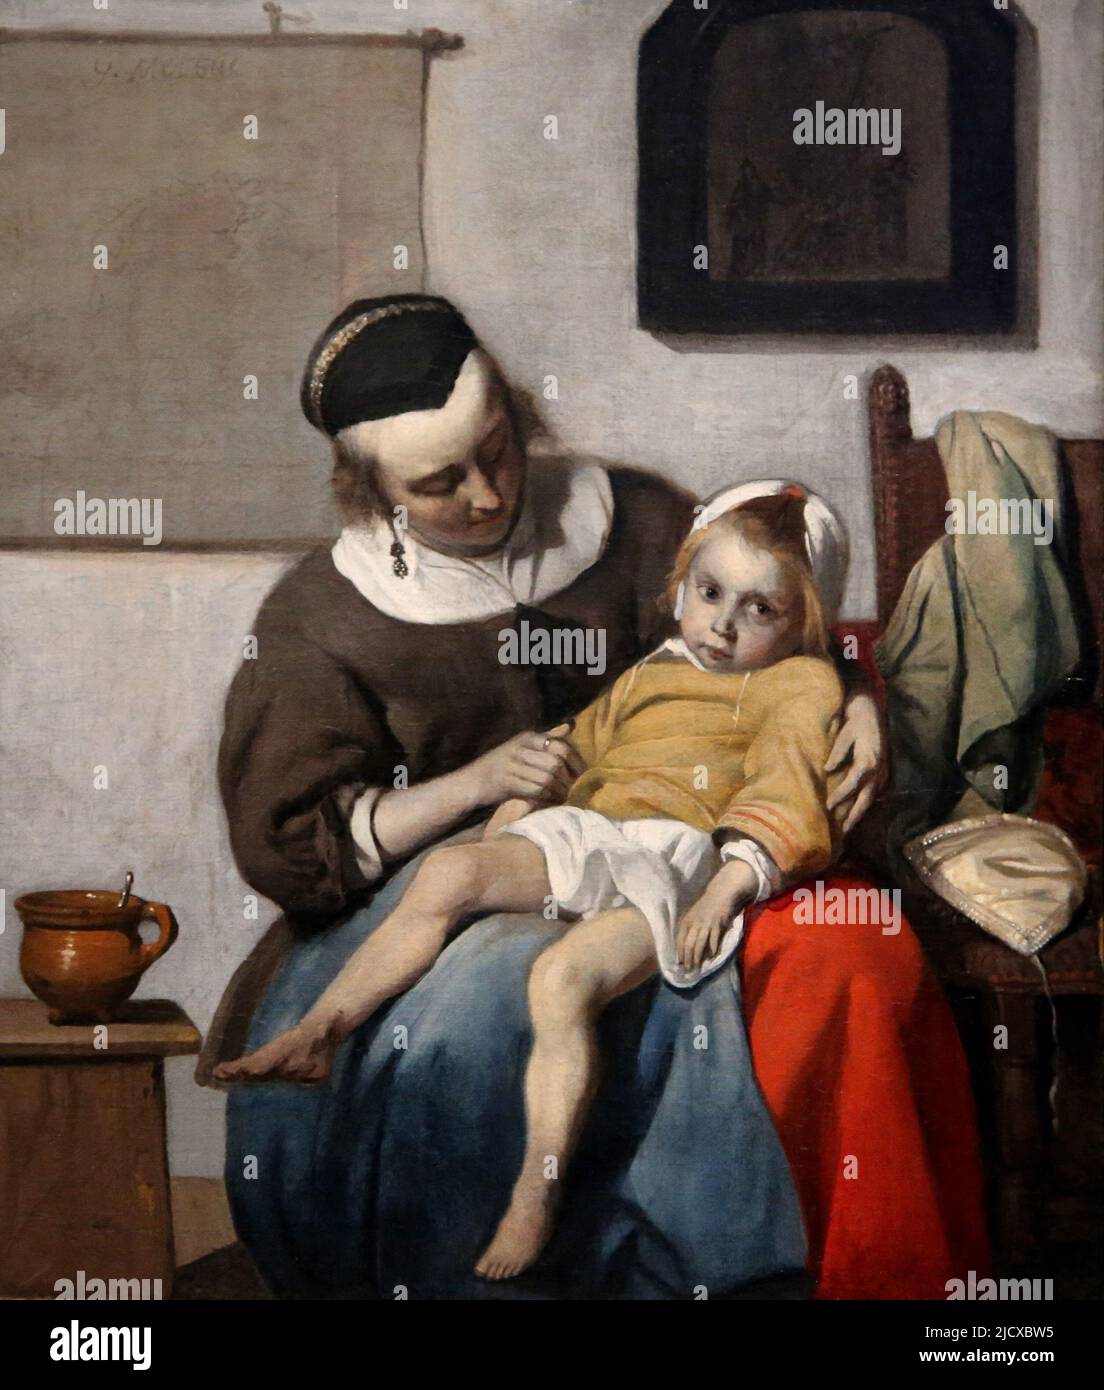 Das kranke Kind von Gabriel Metsu (1629-1667). Öl auf Leinwand, c. 1664-1666. Rijksmuseum. Amsterdam. Niederlande. Stockfoto